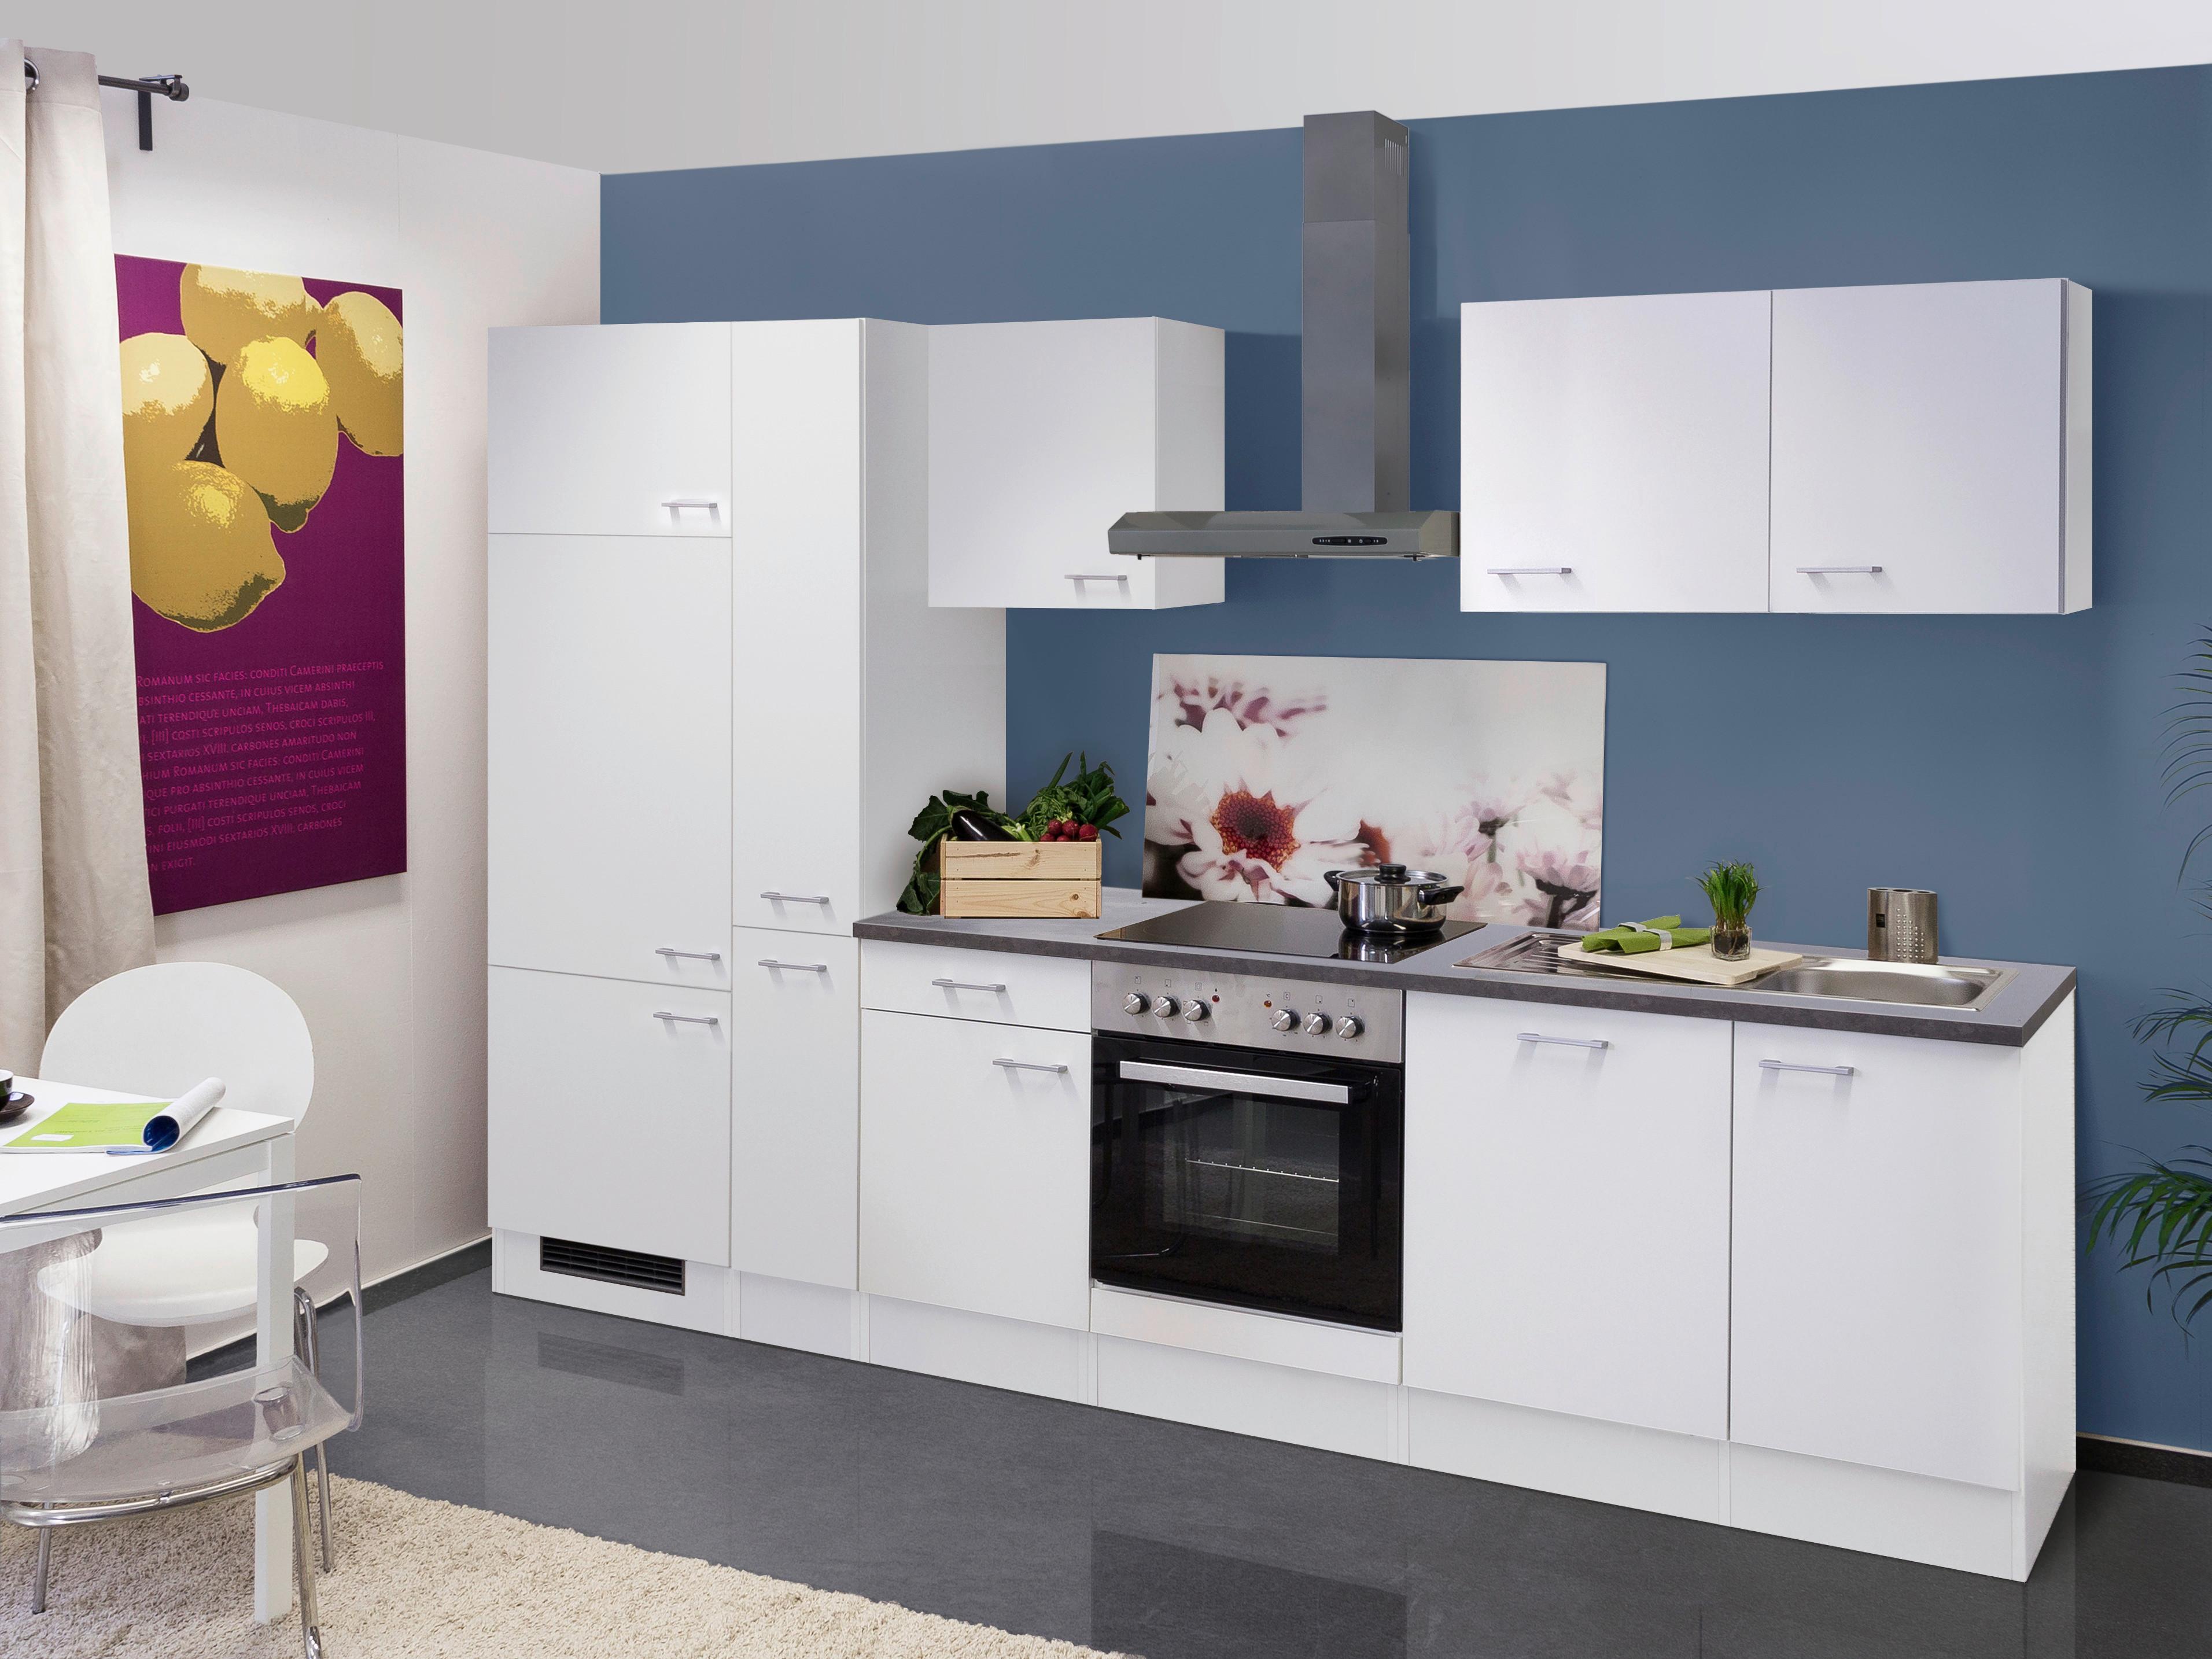 Kuhinjski Blok Lucca 310cm - sivo-smeđa/bijela, Konventionell, drvni materijal/plastika (310cm) - MID.YOU